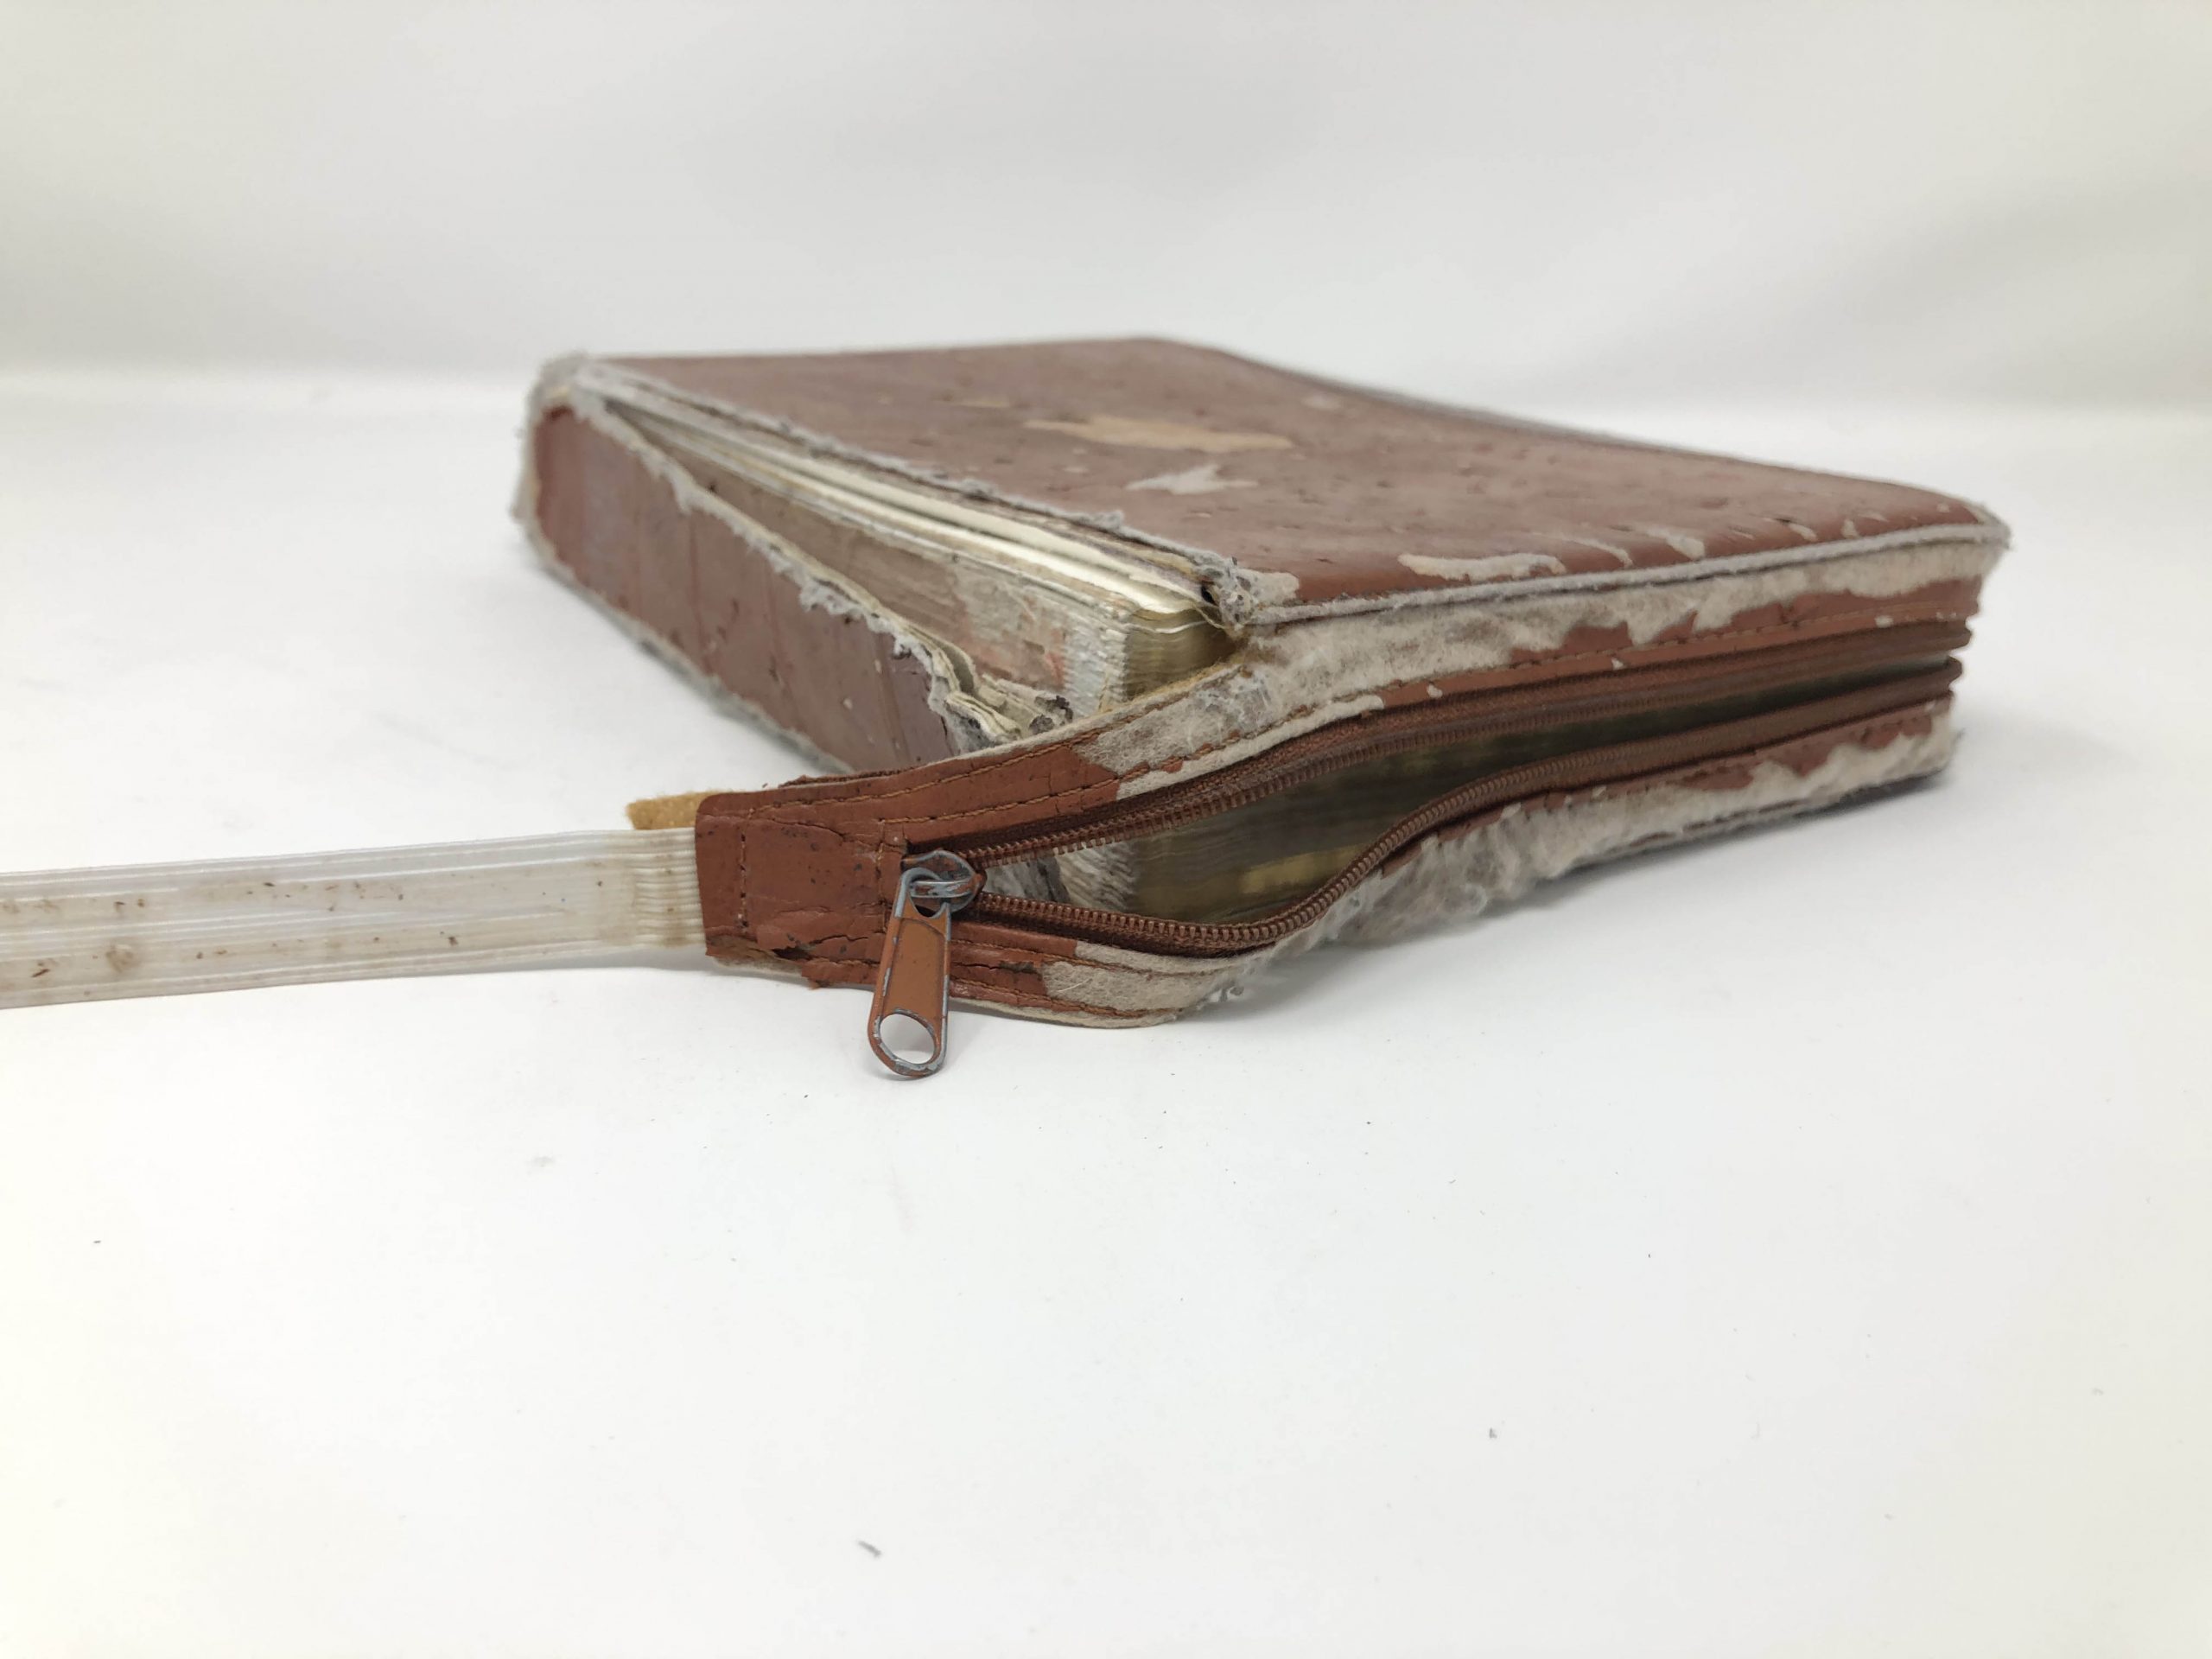 Bible Recovery
Custom Leather Book
Boston Harbor Bookbindery
Olympia WA